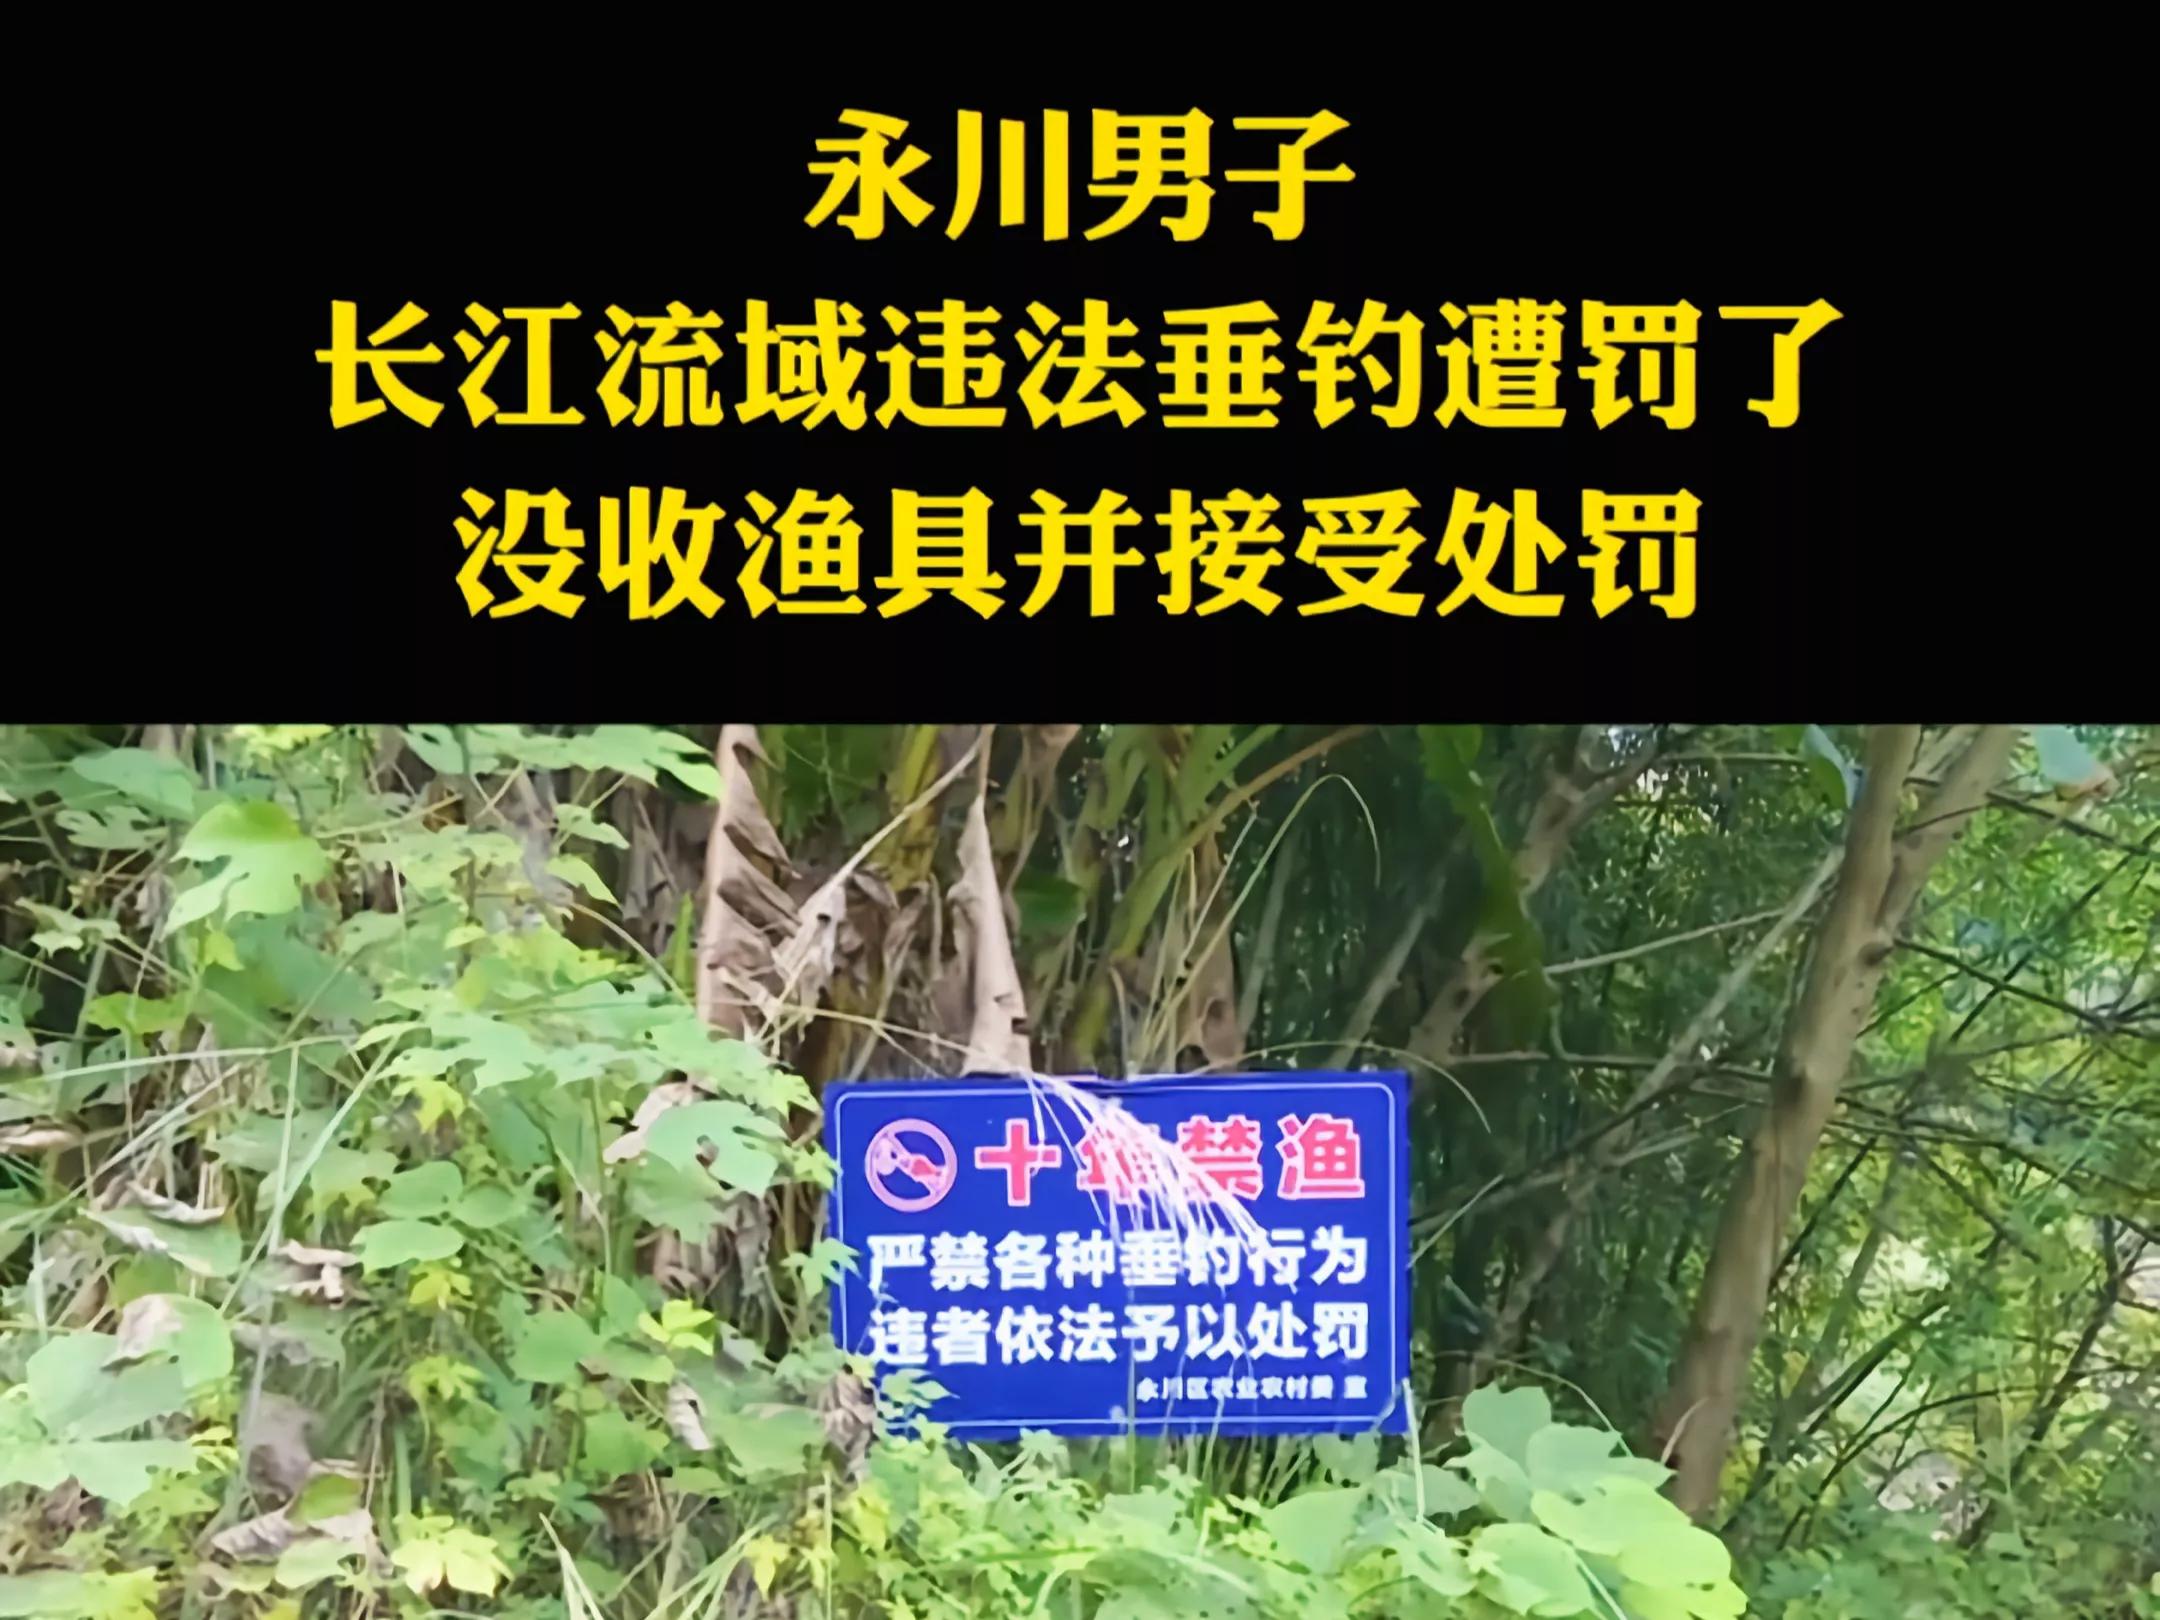 没收渔具并处罚！重庆男子尴尬渔获引争议，禁钓是否该严行？